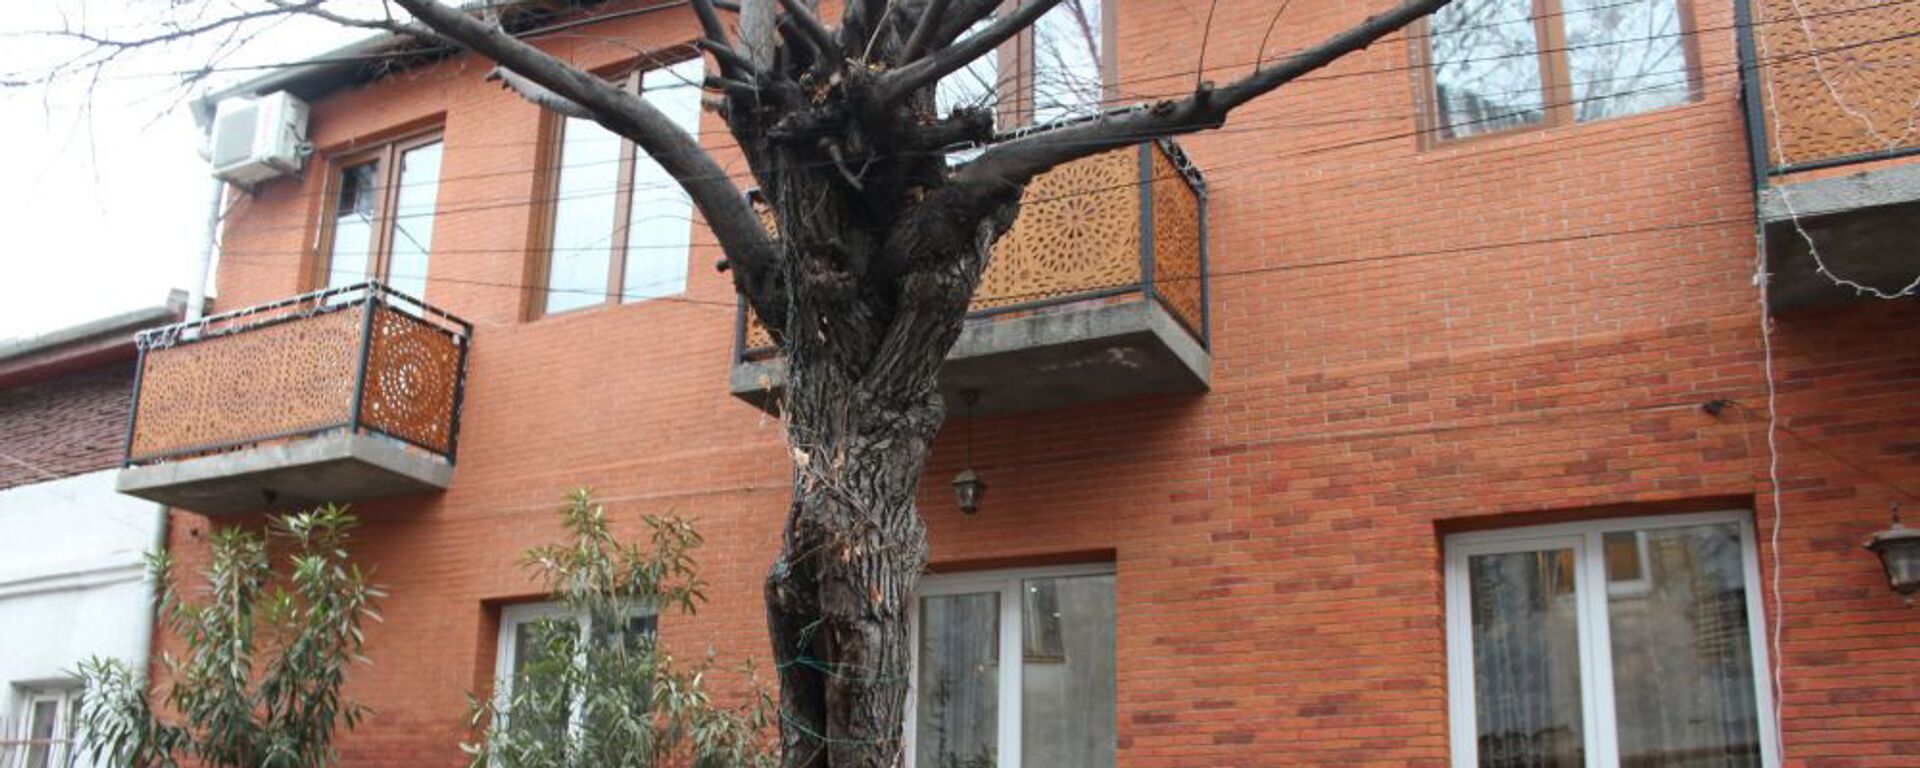 Владельцы дома Параджанова  отремонтировали его и теперь он самый симпатичный на улице - Sputnik Արմենիա, 1920, 04.02.2020